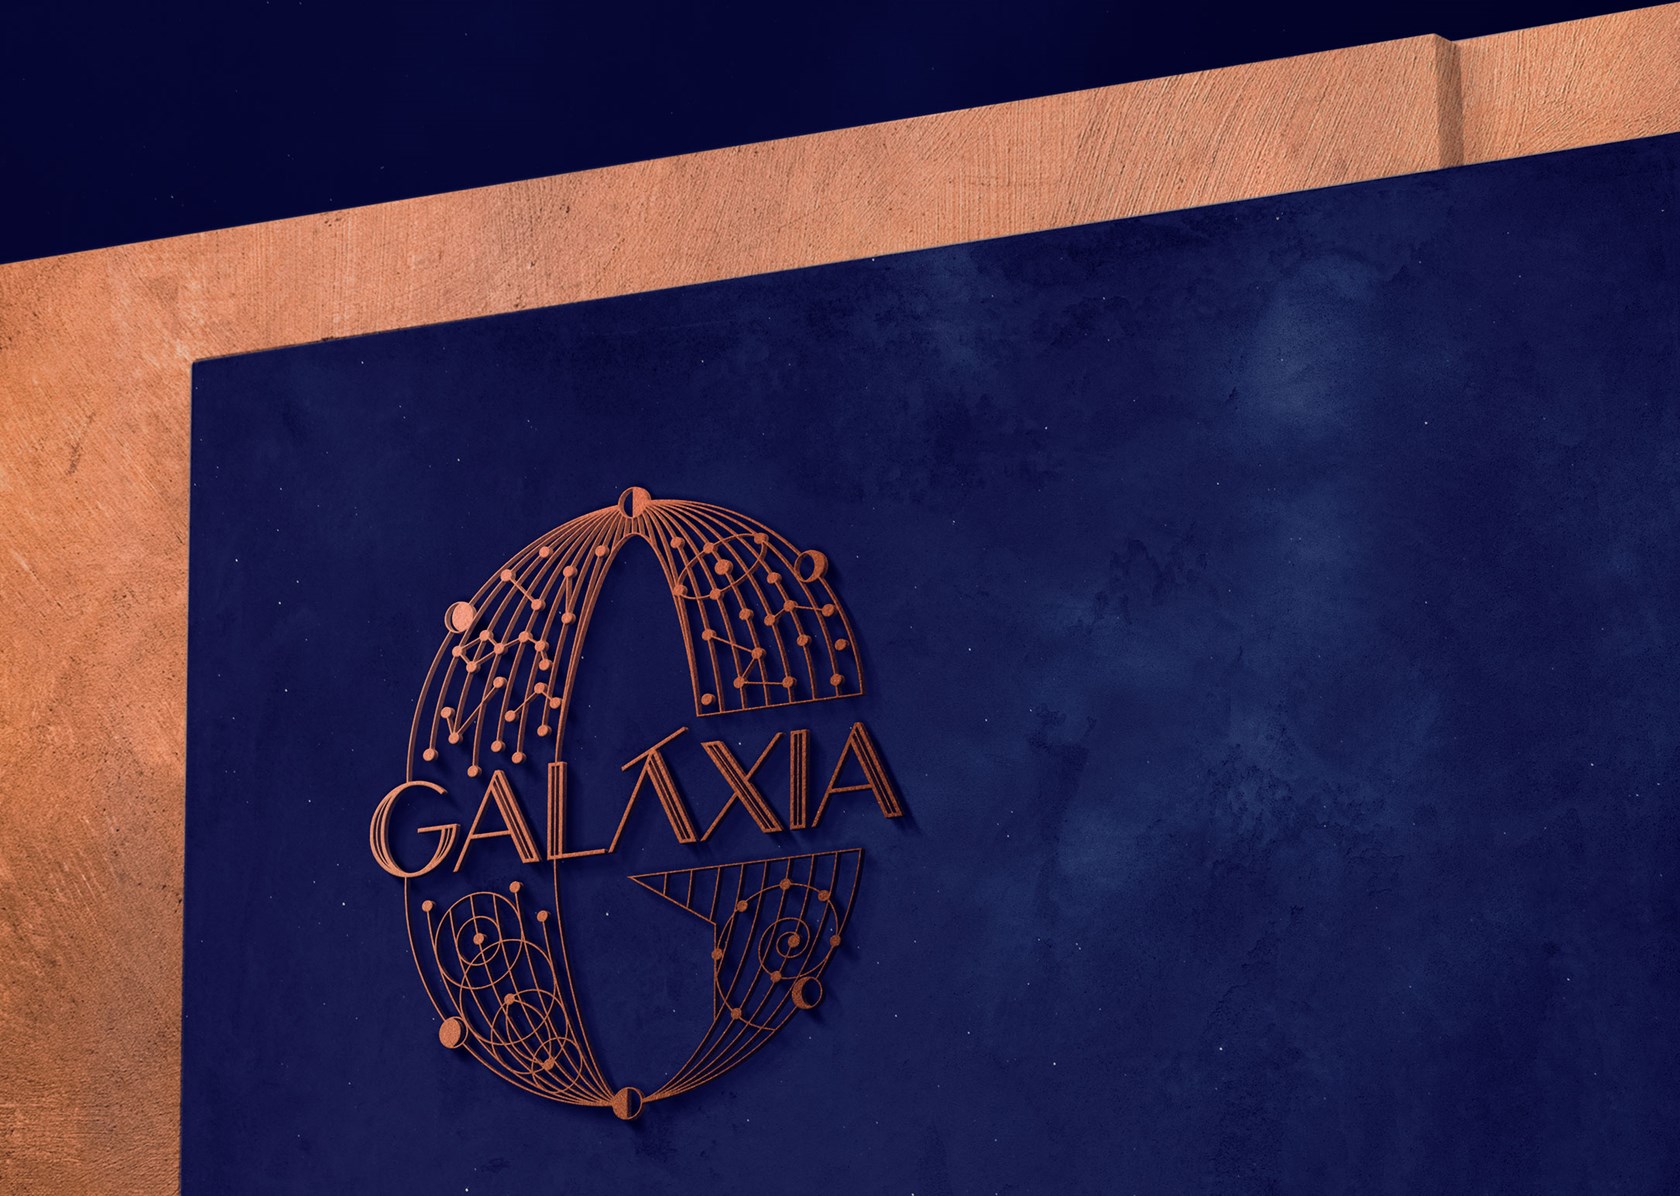 Galaxia Galeria4